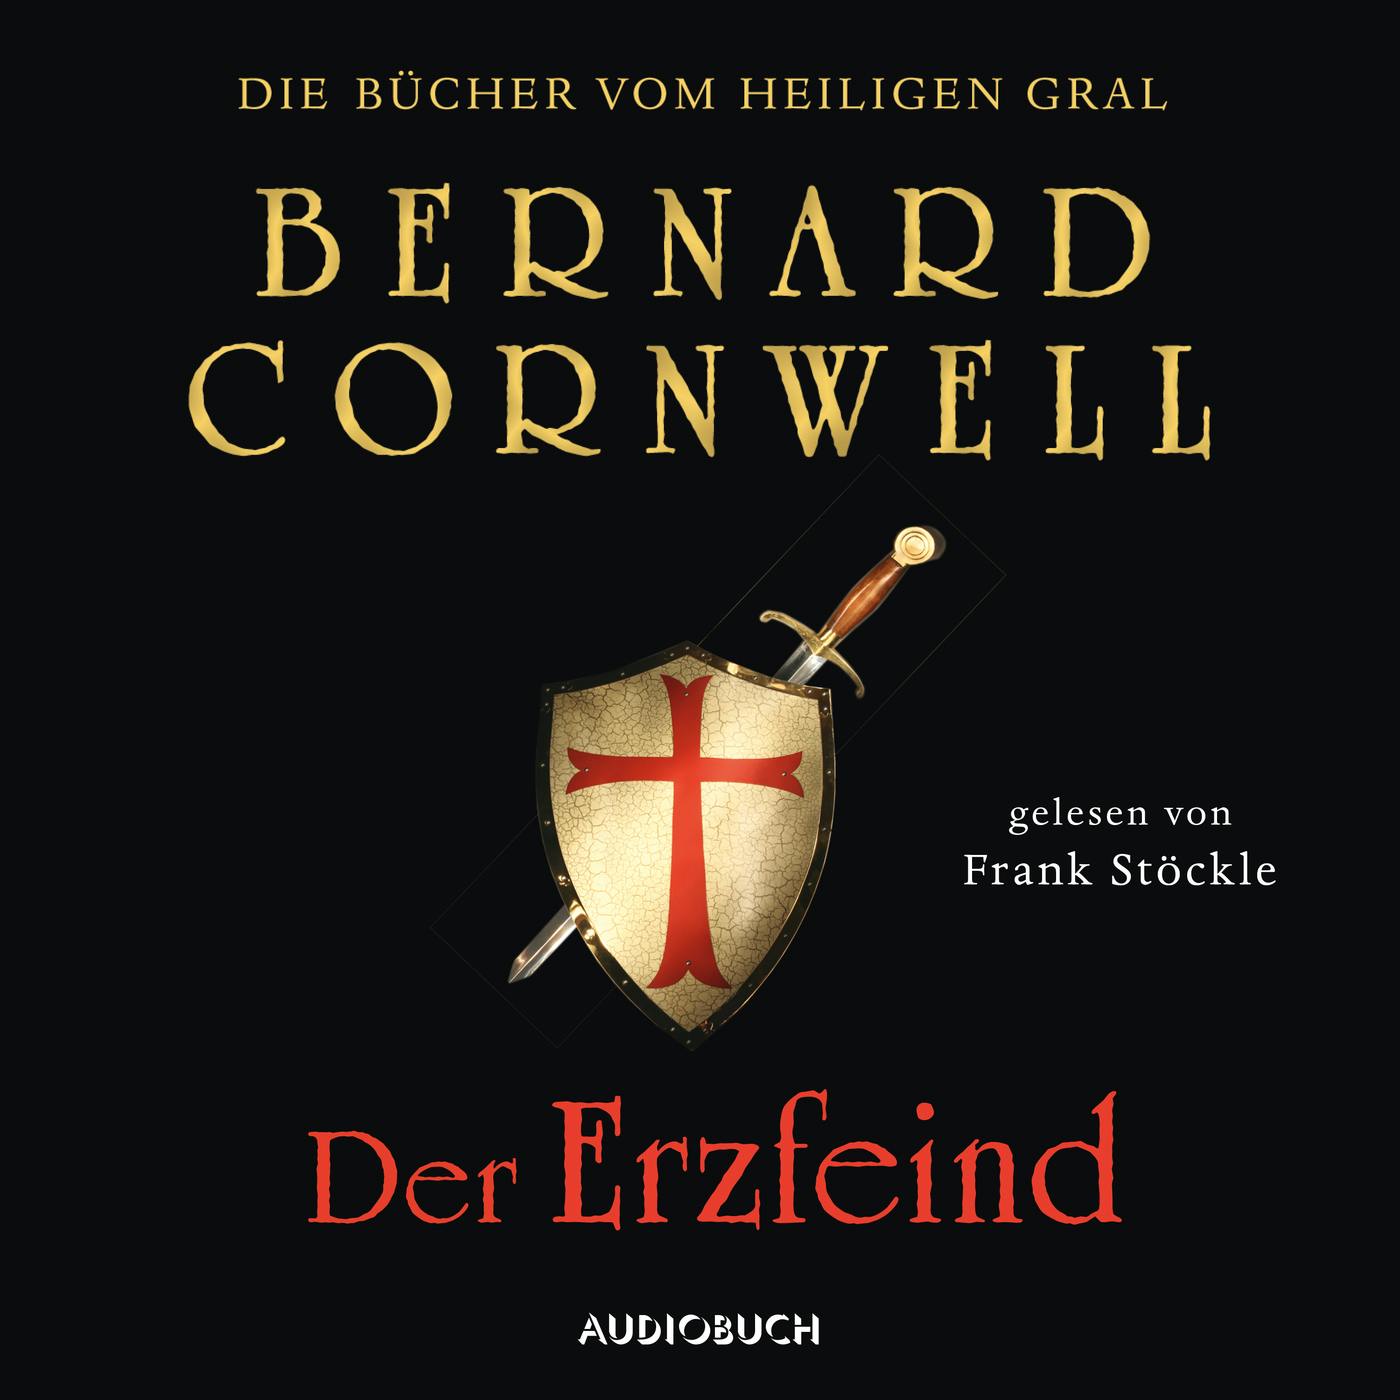 Der Erzfeind - Die Bücher vom heiligen Gral 3 (Ungekürzt) - Bernard Cornwell